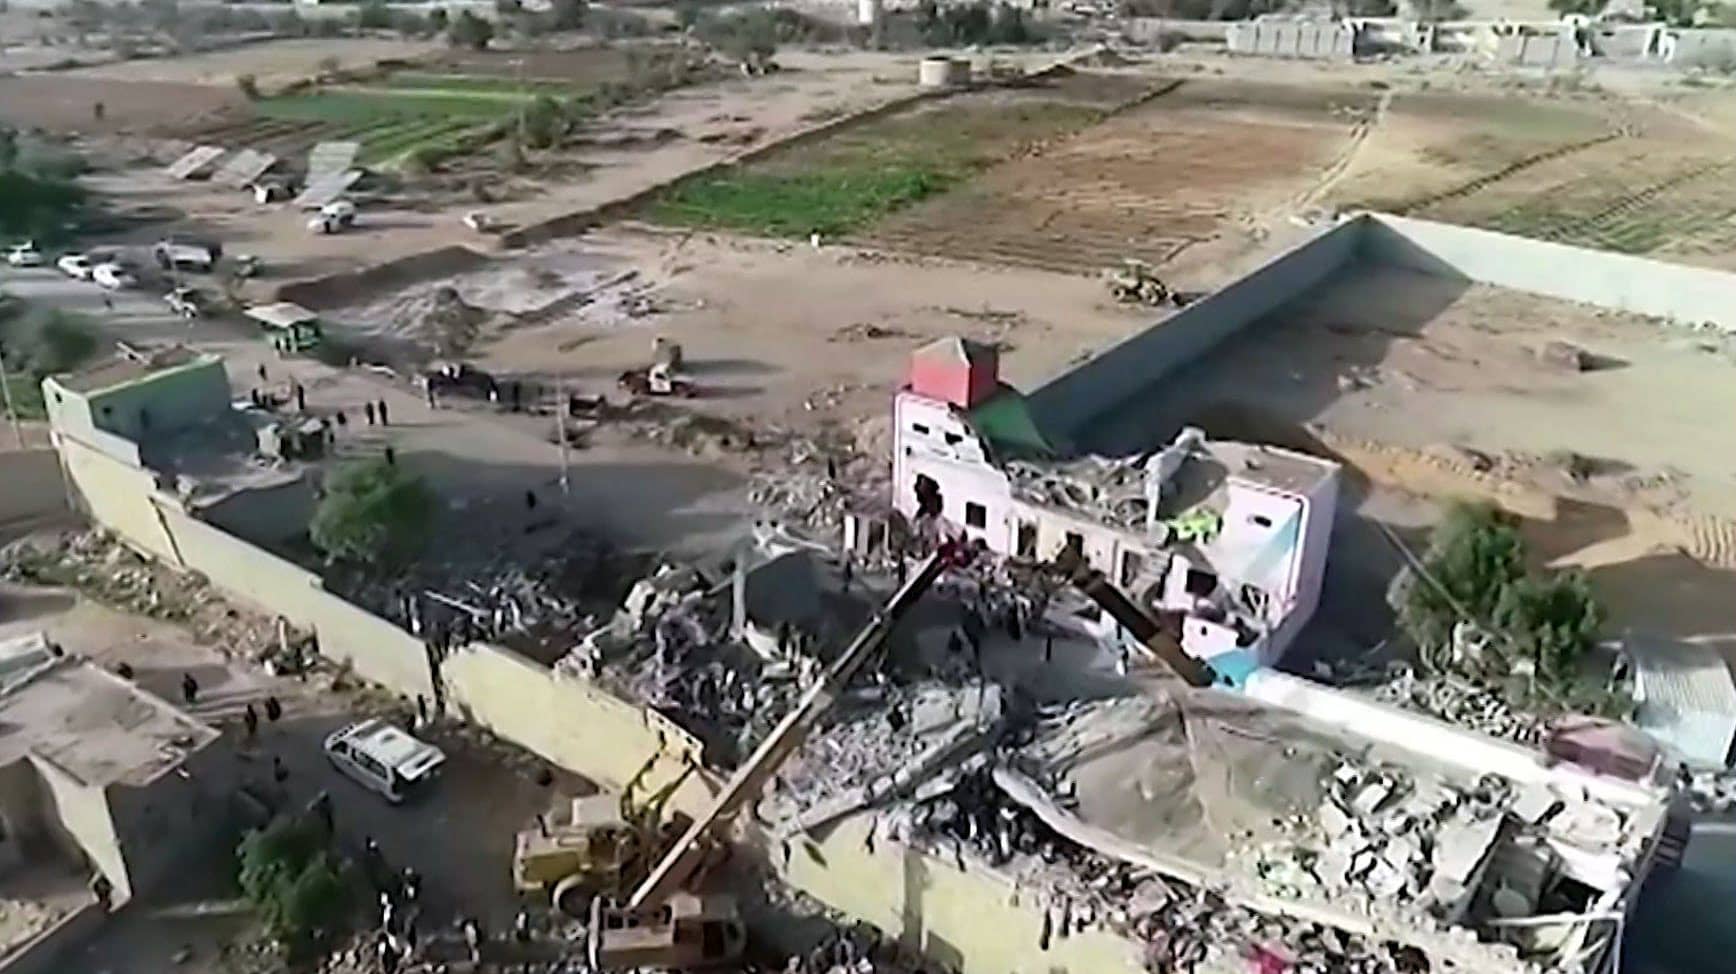 Videosta kaapatussa kuvassa näkyy tuhoutunut rakennus.